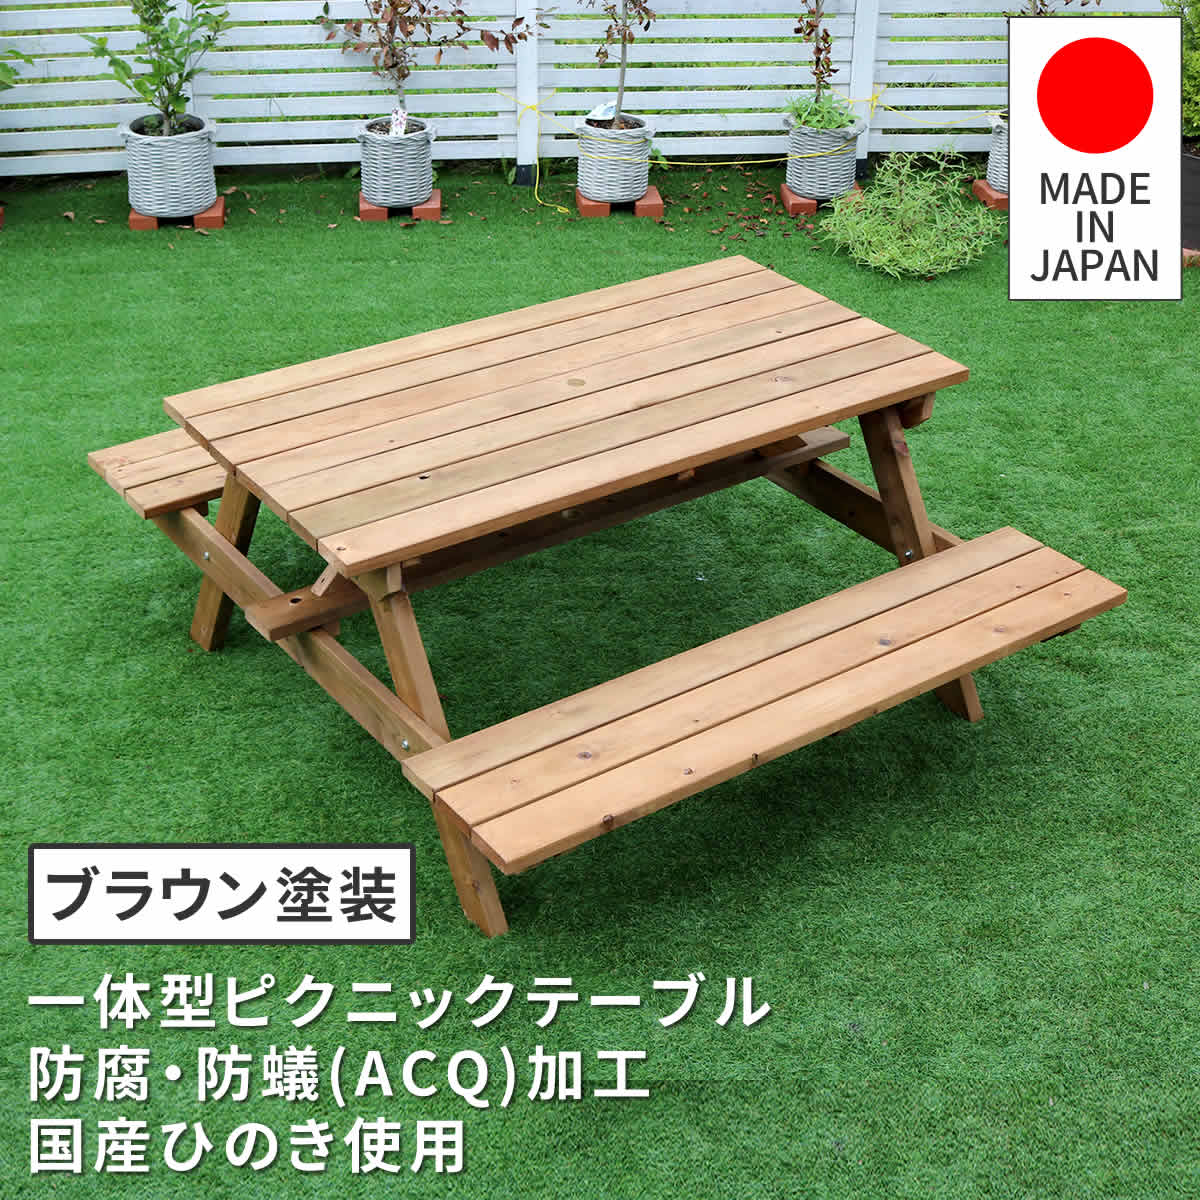 ベンチ一体型 ピクニックテーブル 日本製 アウトドアテーブル 庭の机 